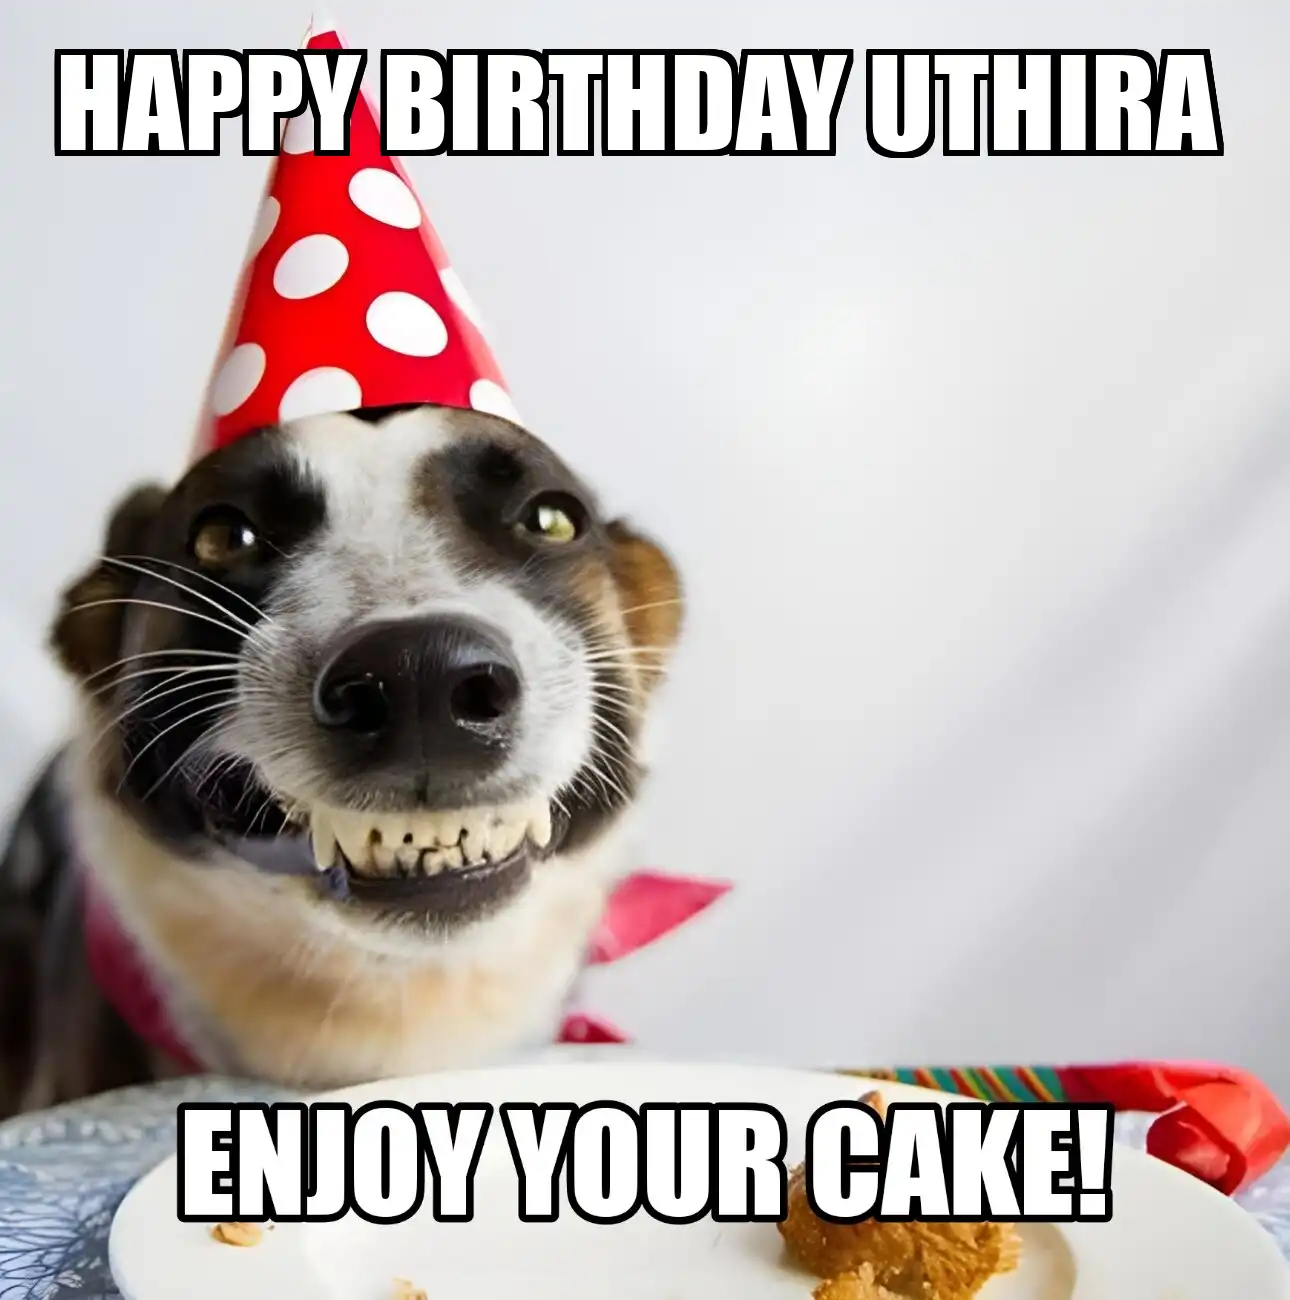 Happy Birthday Uthira Enjoy Your Cake Dog Meme